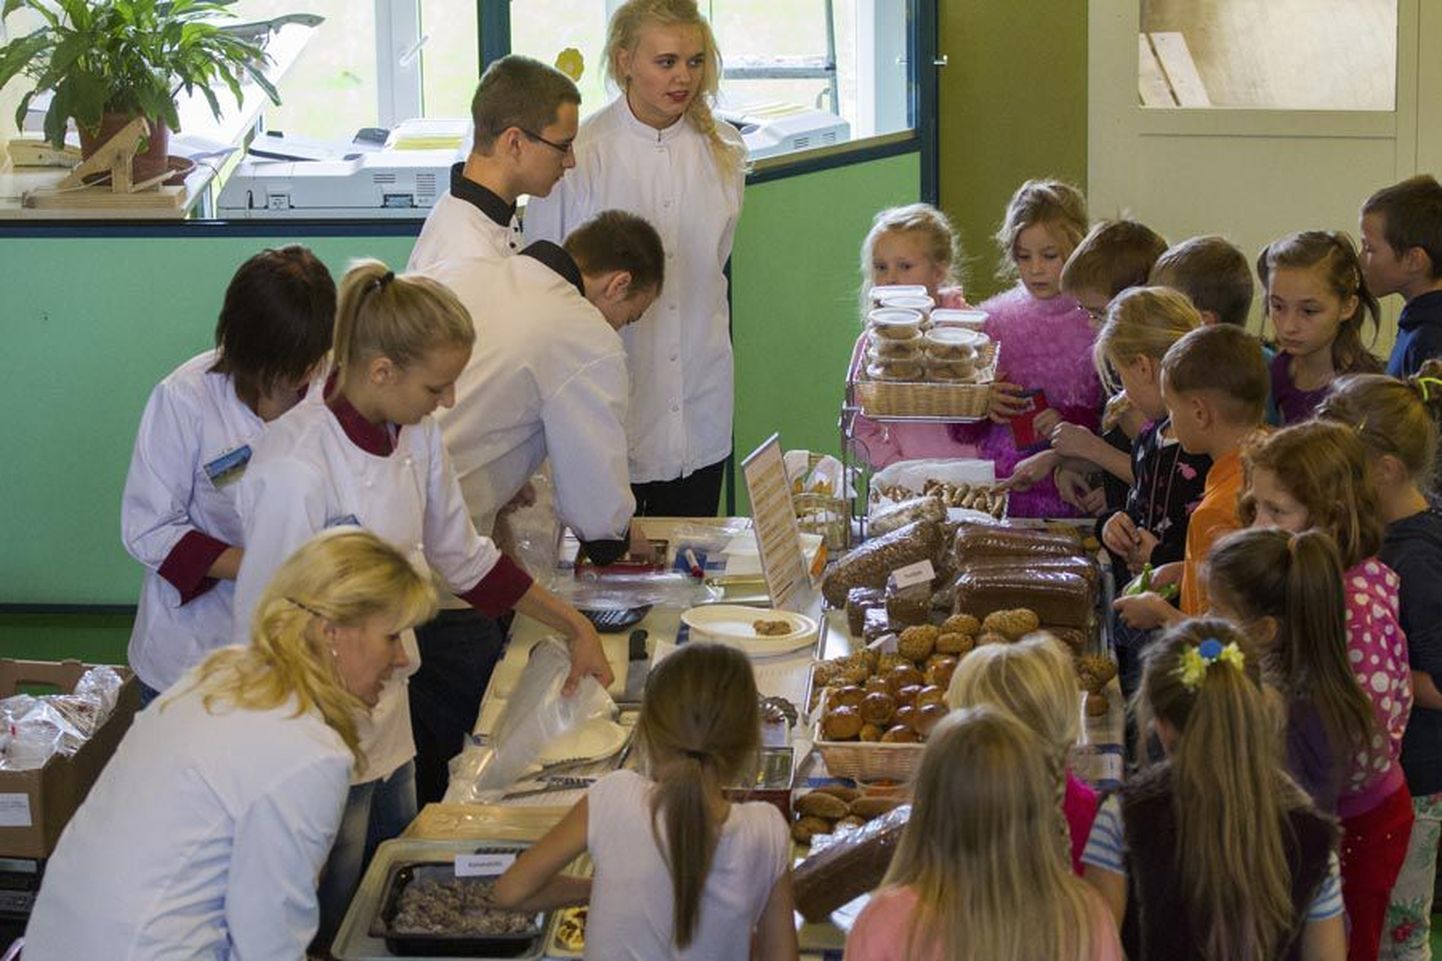 Teisipäeval müüsid Olustvere teenindus- ja maamajanduskooli õpilased õppetööstuses valmistatud leiba ja muud suupoolist Paalalinna koolis.